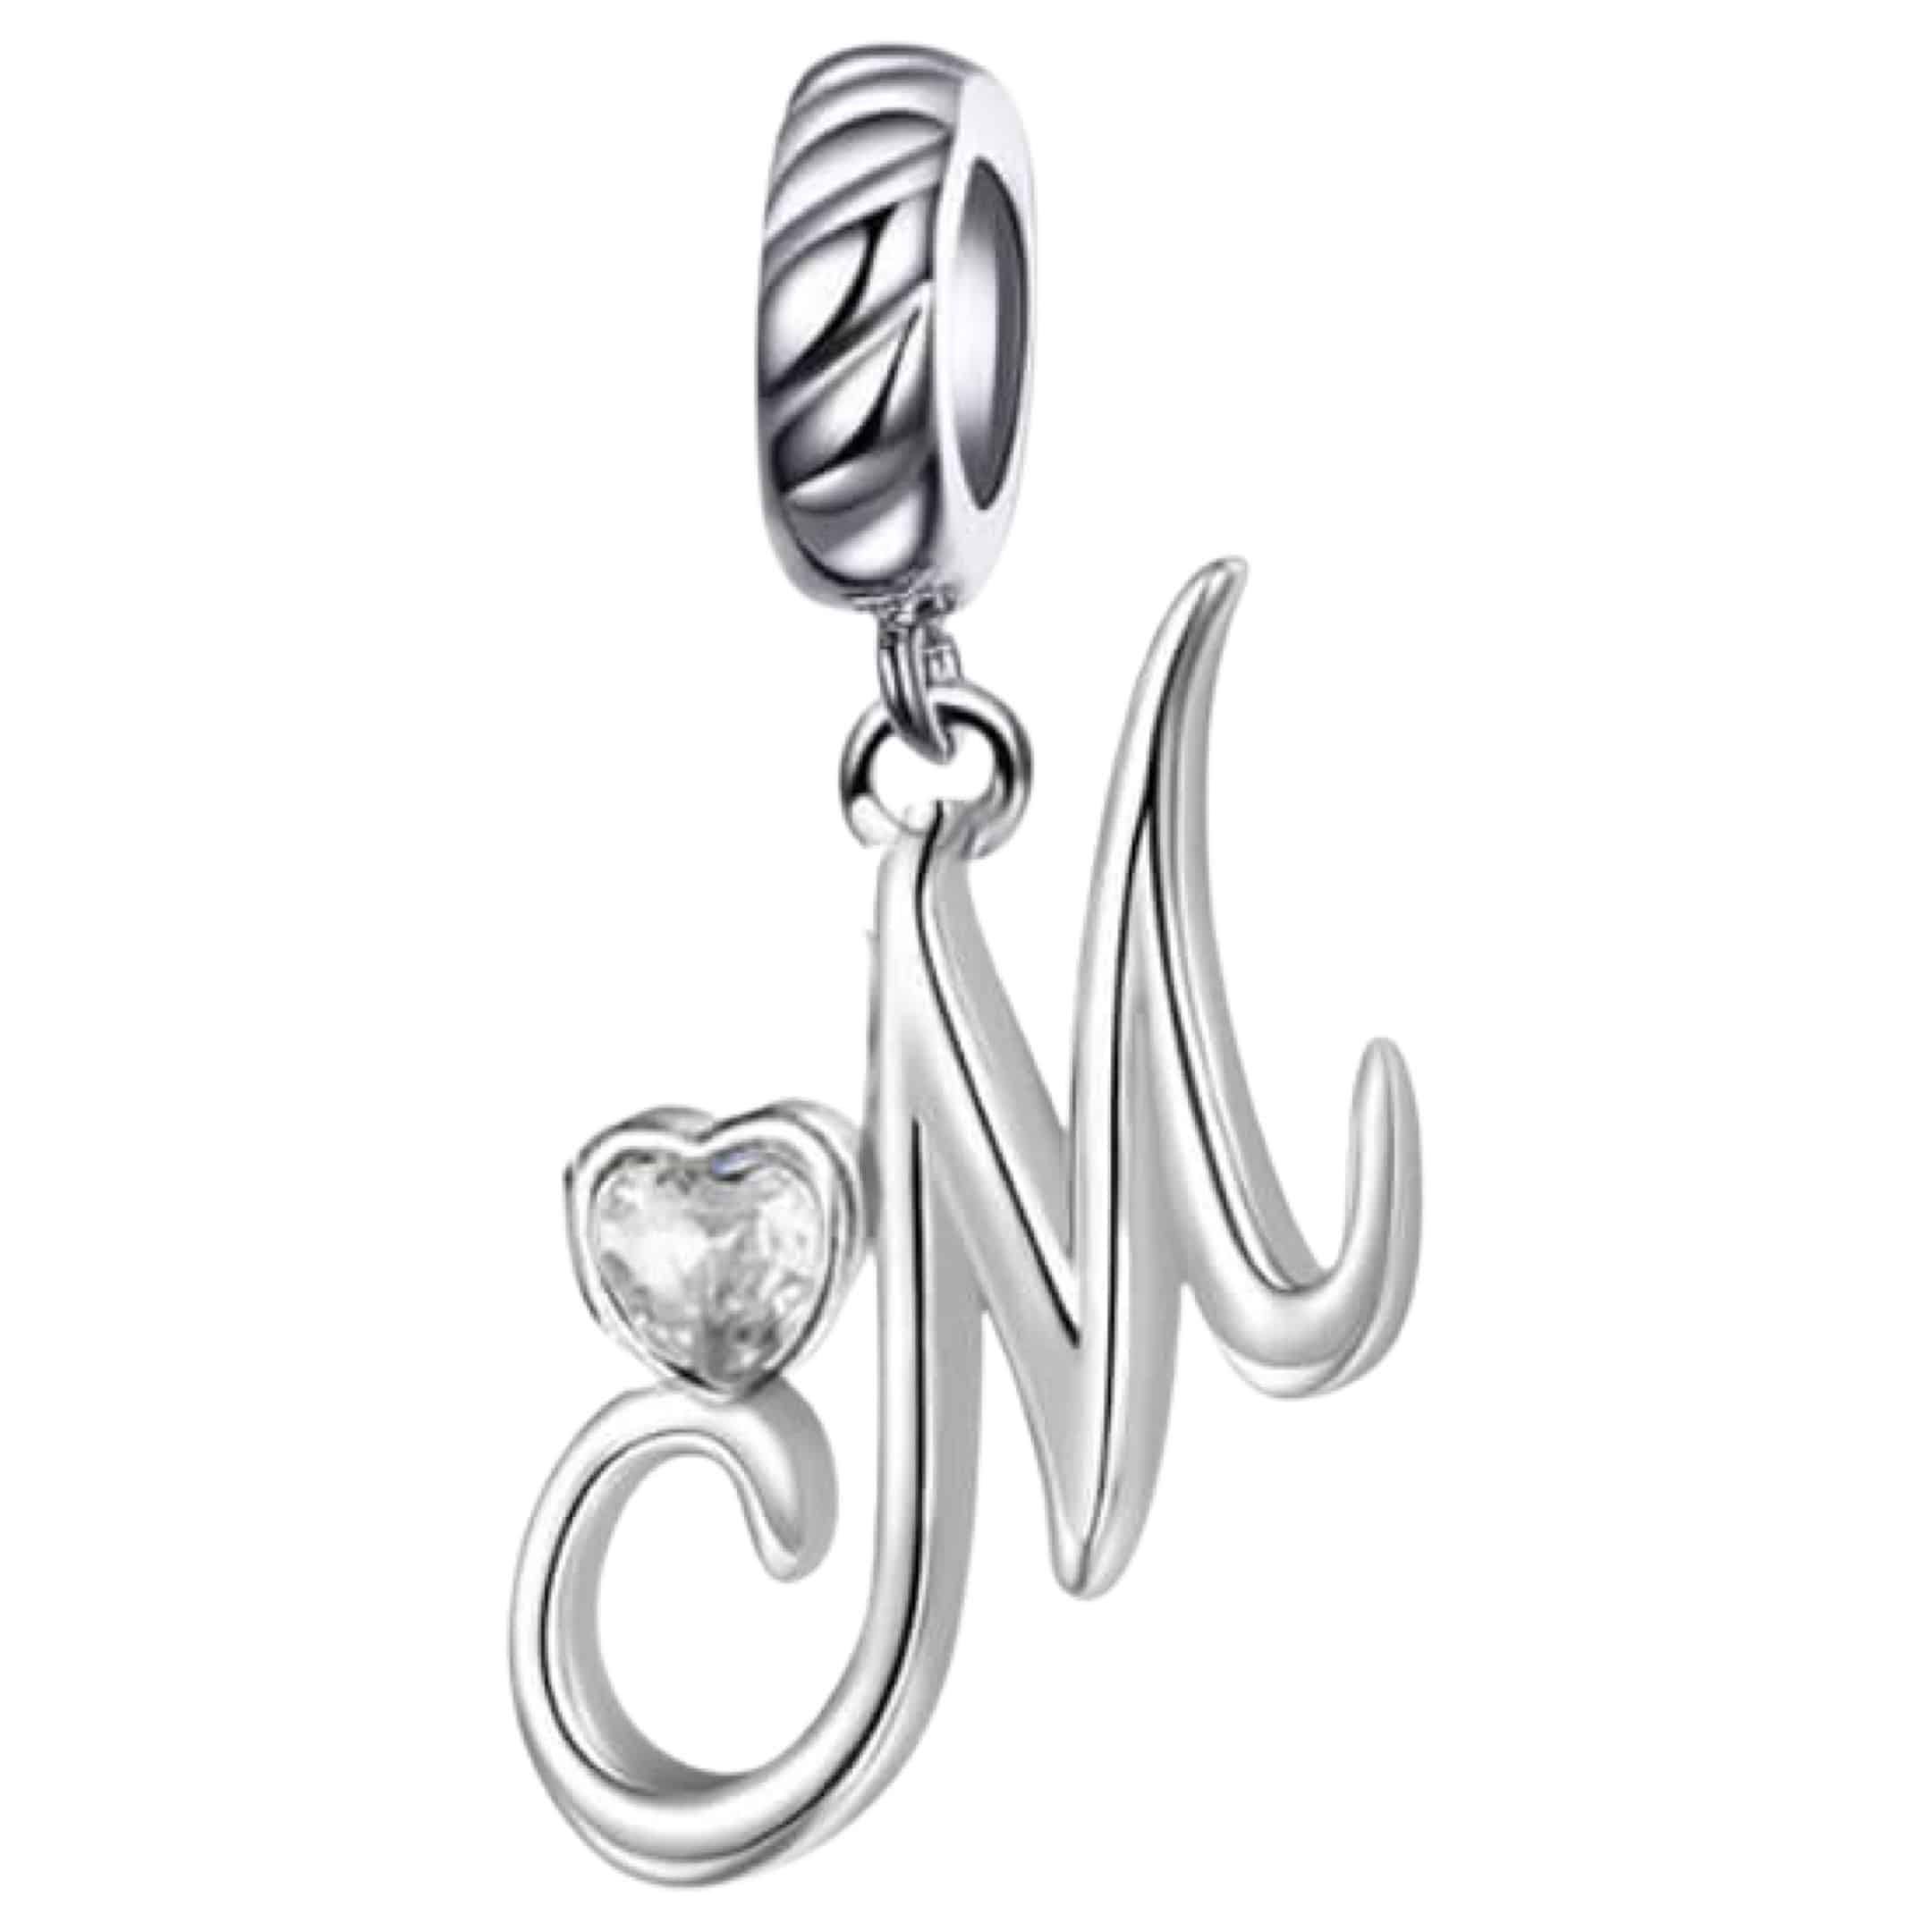 Product Afbeelding Vooraanzicht van onze prachtige nieuw charm uit de letter collectie. Deze sierletter M is gemaakt van 925 sterling zilver en heeft een groot hart gemaakt van zirkonia. Deze charm M is sierlijk met mooi krullen.